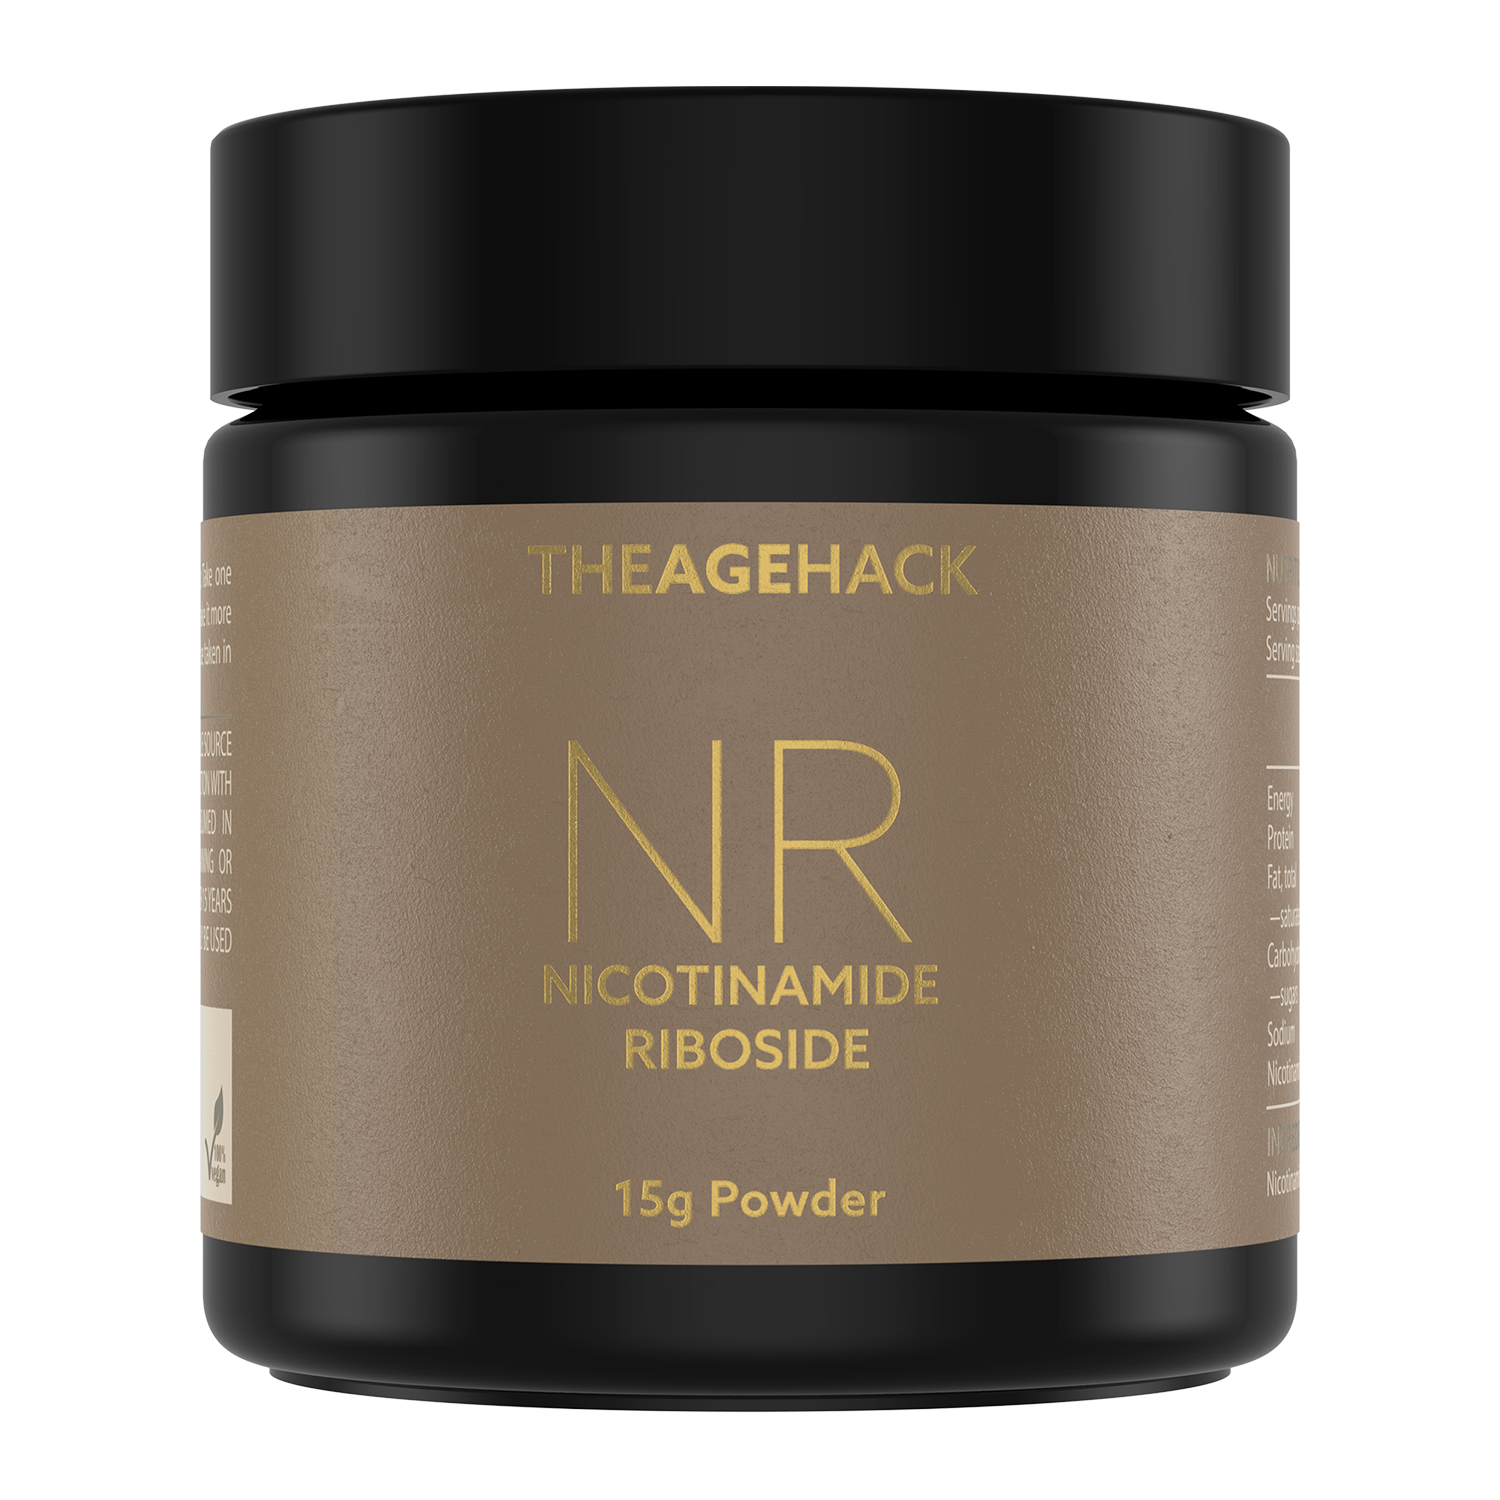 Nicotinamide Riboside NR Powder by THEAGEHACK